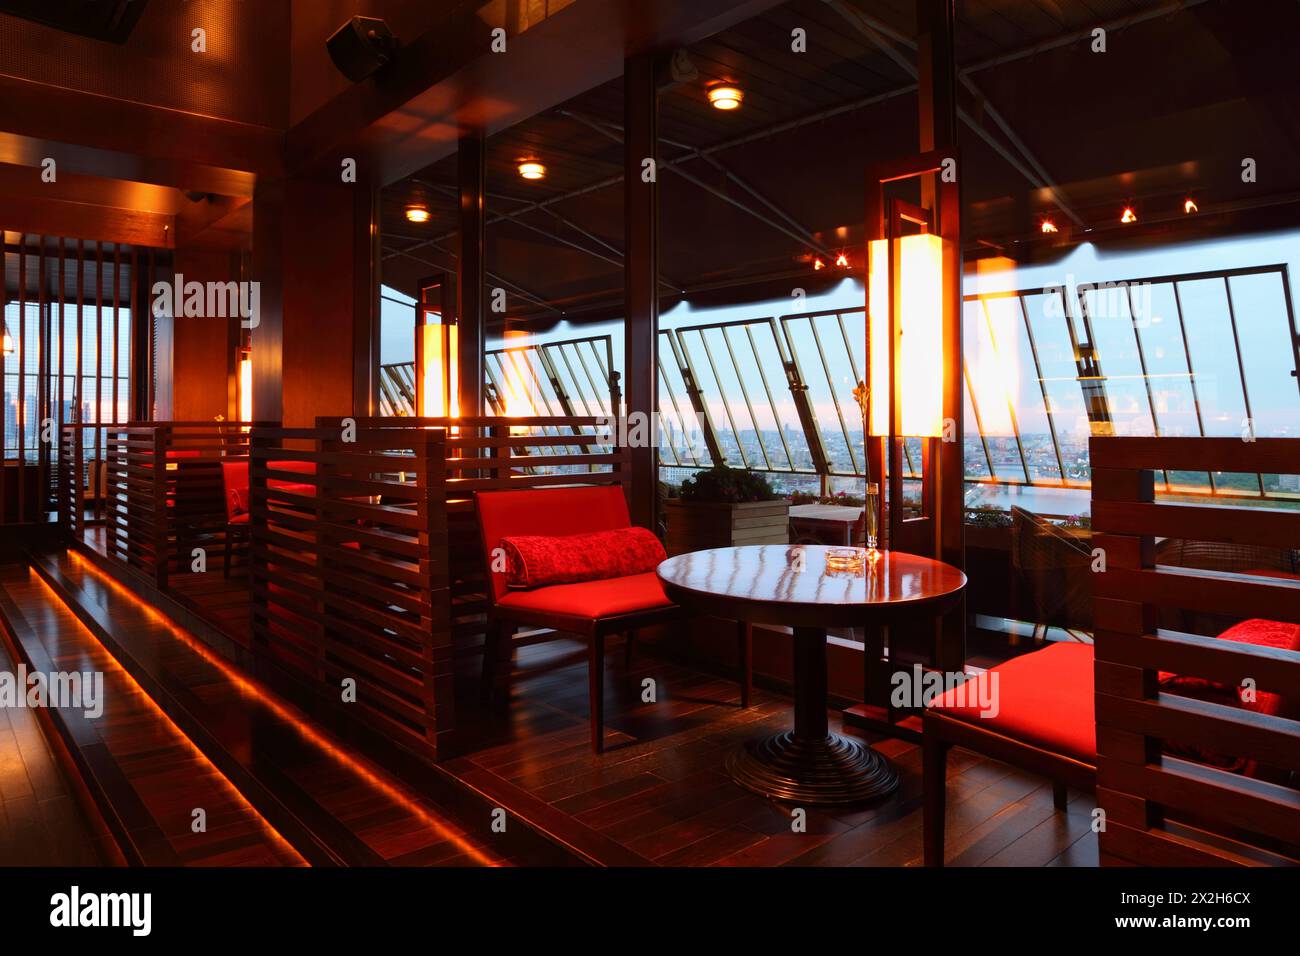 Fila di tavoli marroni e posti a sedere rossi con pareti divisorie in un intimo ristorante vuoto la sera Foto Stock